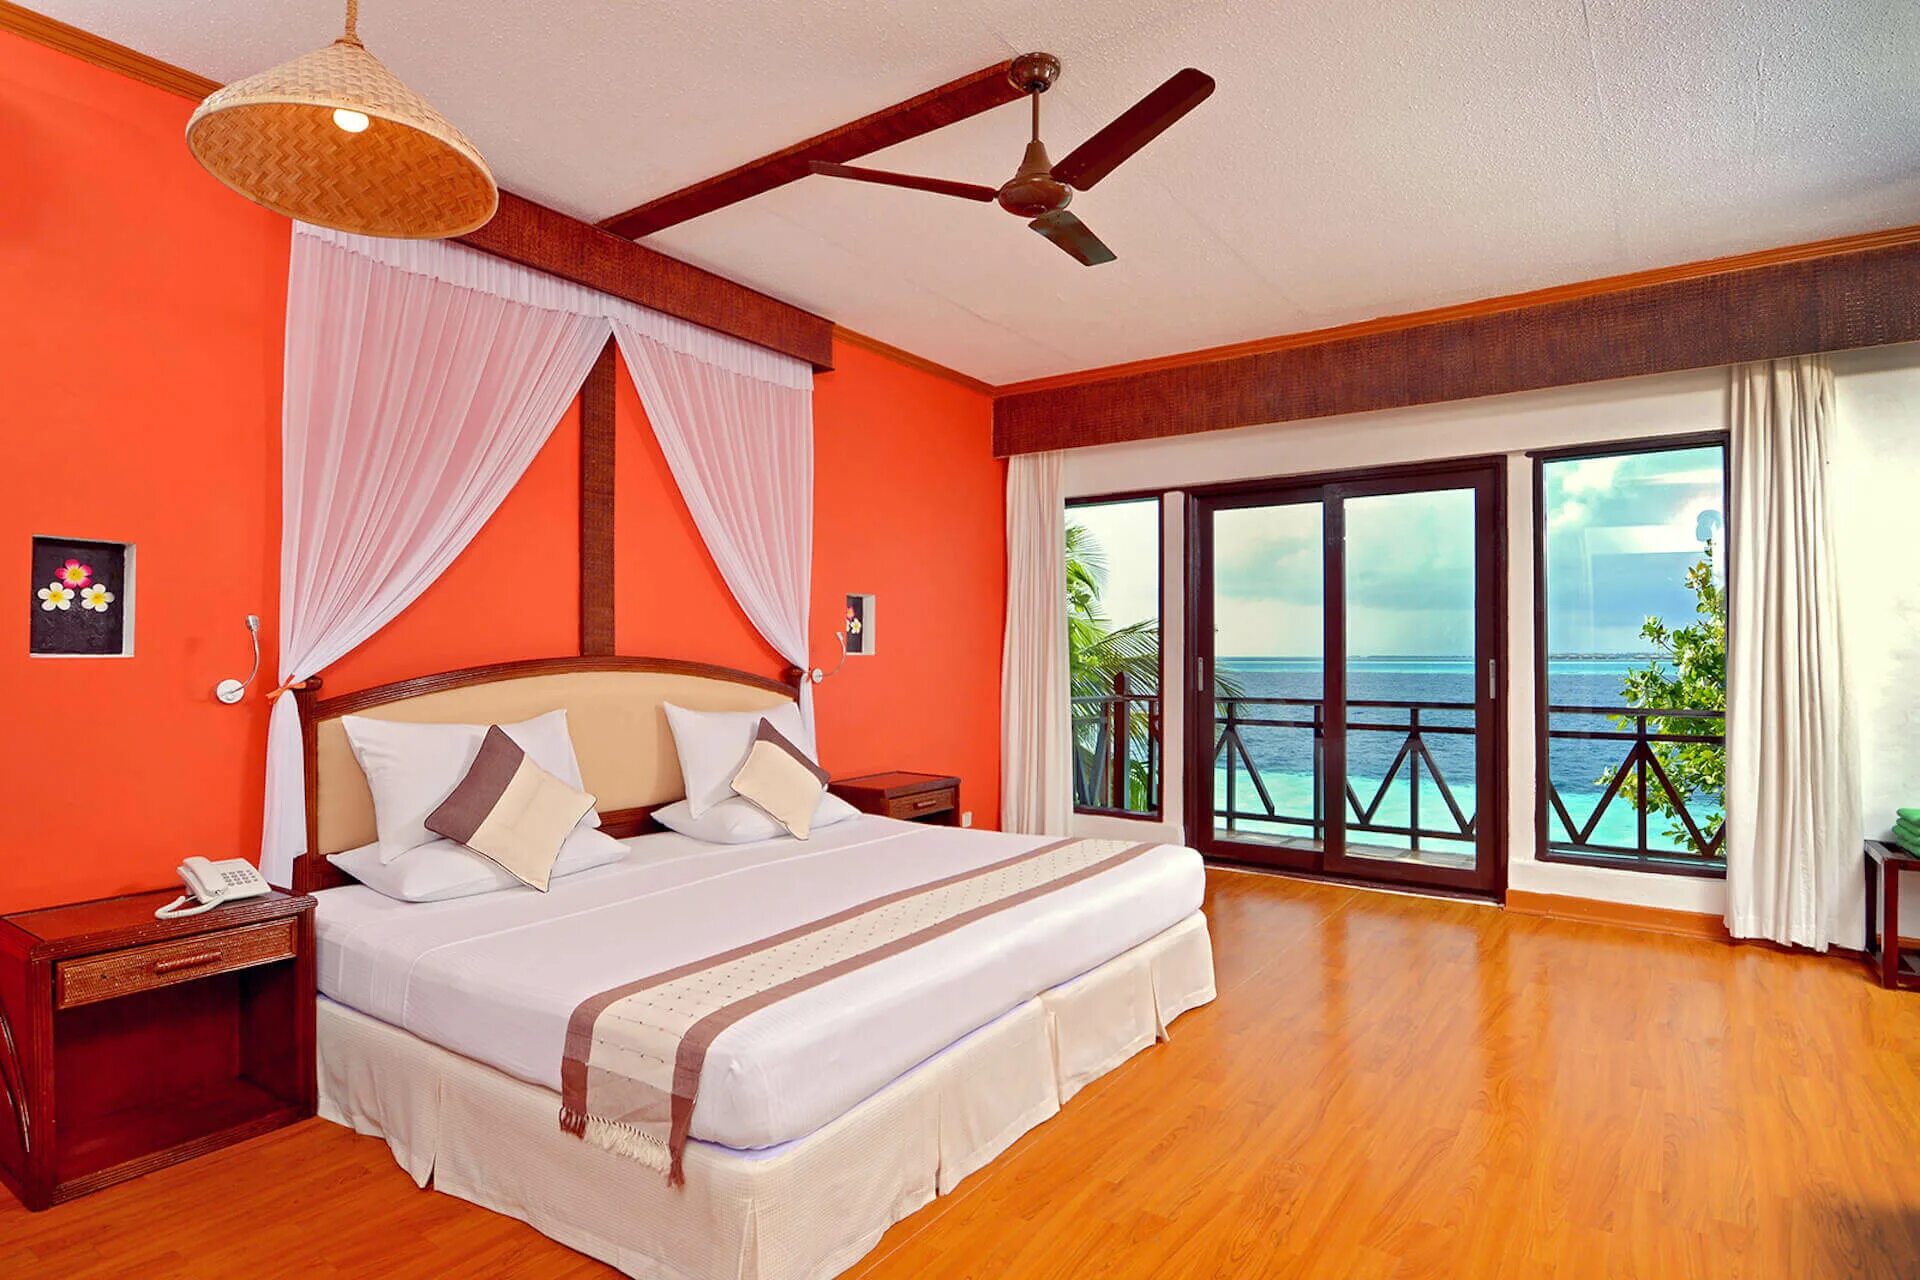 Ранвели Виладж Мальдивы отель. Ranveli Island Resort номера. Остров Дангети Мальдивы. Ранвели Вилладж Мальдивы фото.